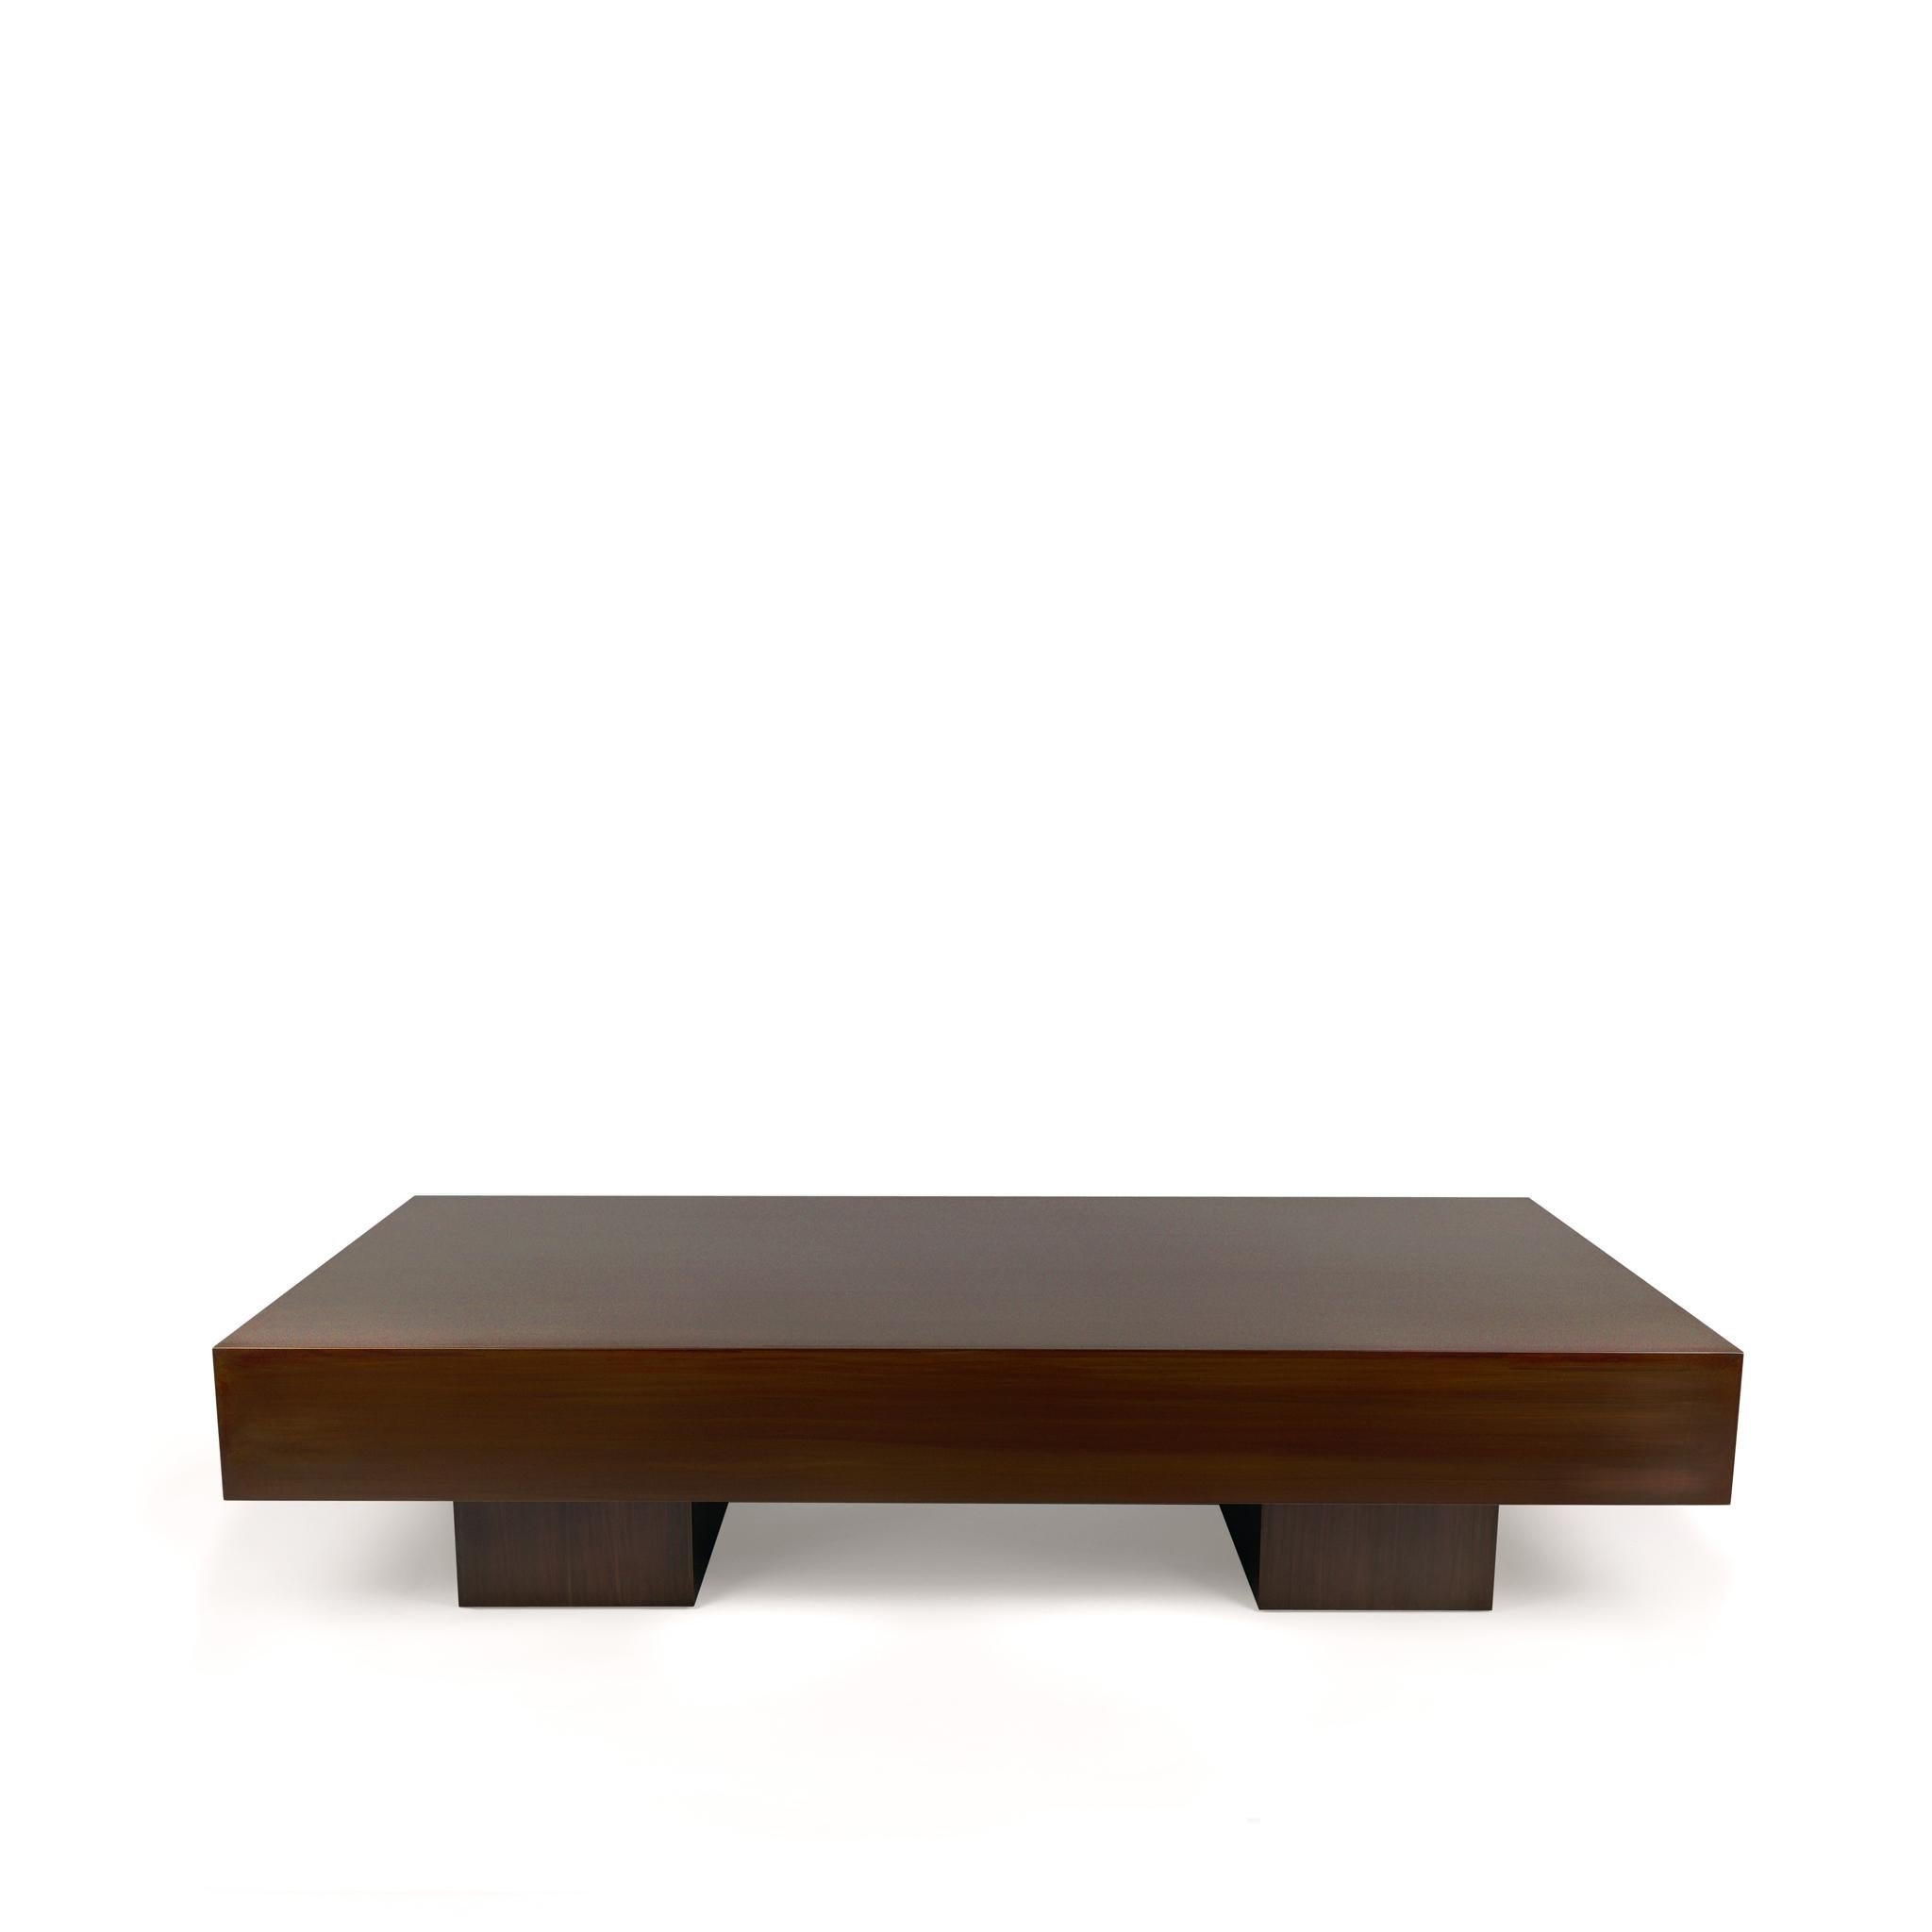 Der Hiro-Tisch ist ein einfaches architektonisches Objekt, das jedoch eine große Präsenz hat. Er ist robust und solide und hat eine auffallend schlichte Form. Handgefertigt mit einer warmen Vintage-Bronze-Behandlung, die das minimalistische Design